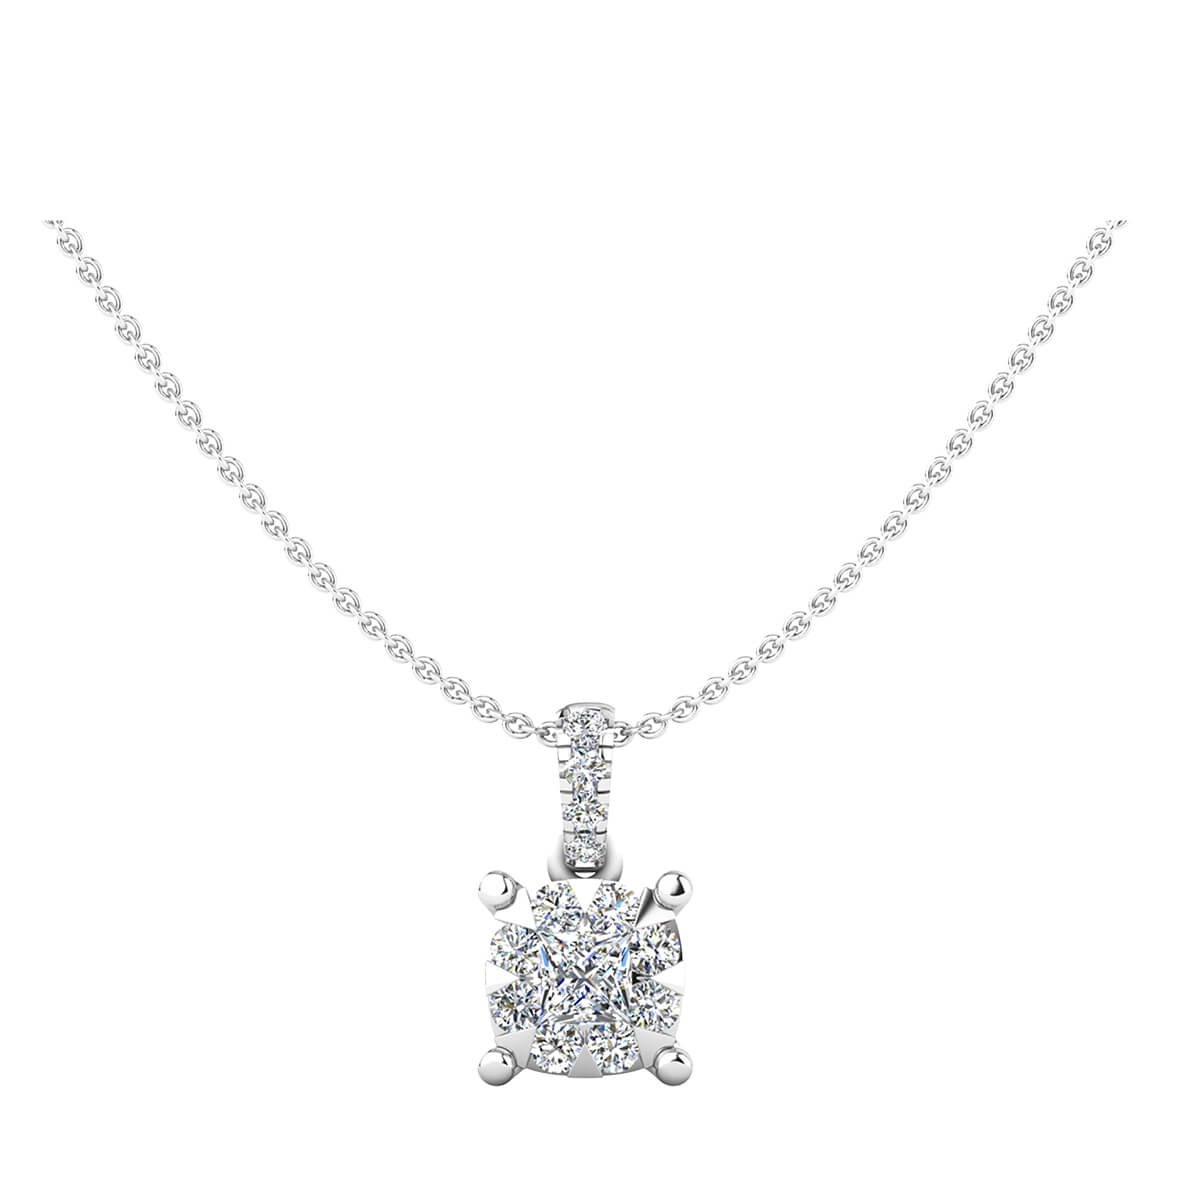 Diamantsmykke med princess cut og brillianter 0,32 ct